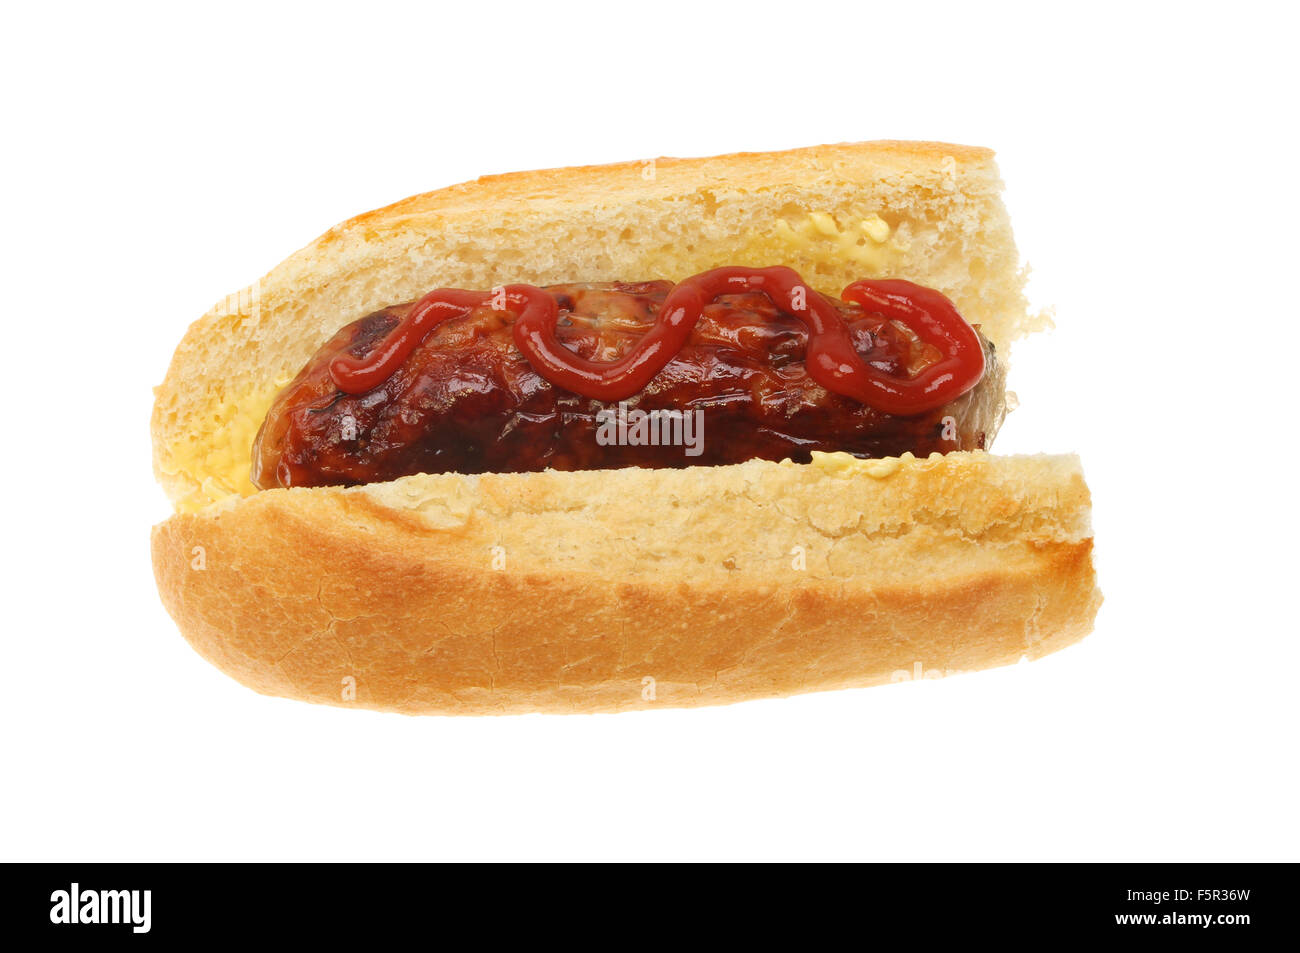 Salchichas con ketchup en una baguette aislado contra un blanco Foto de stock